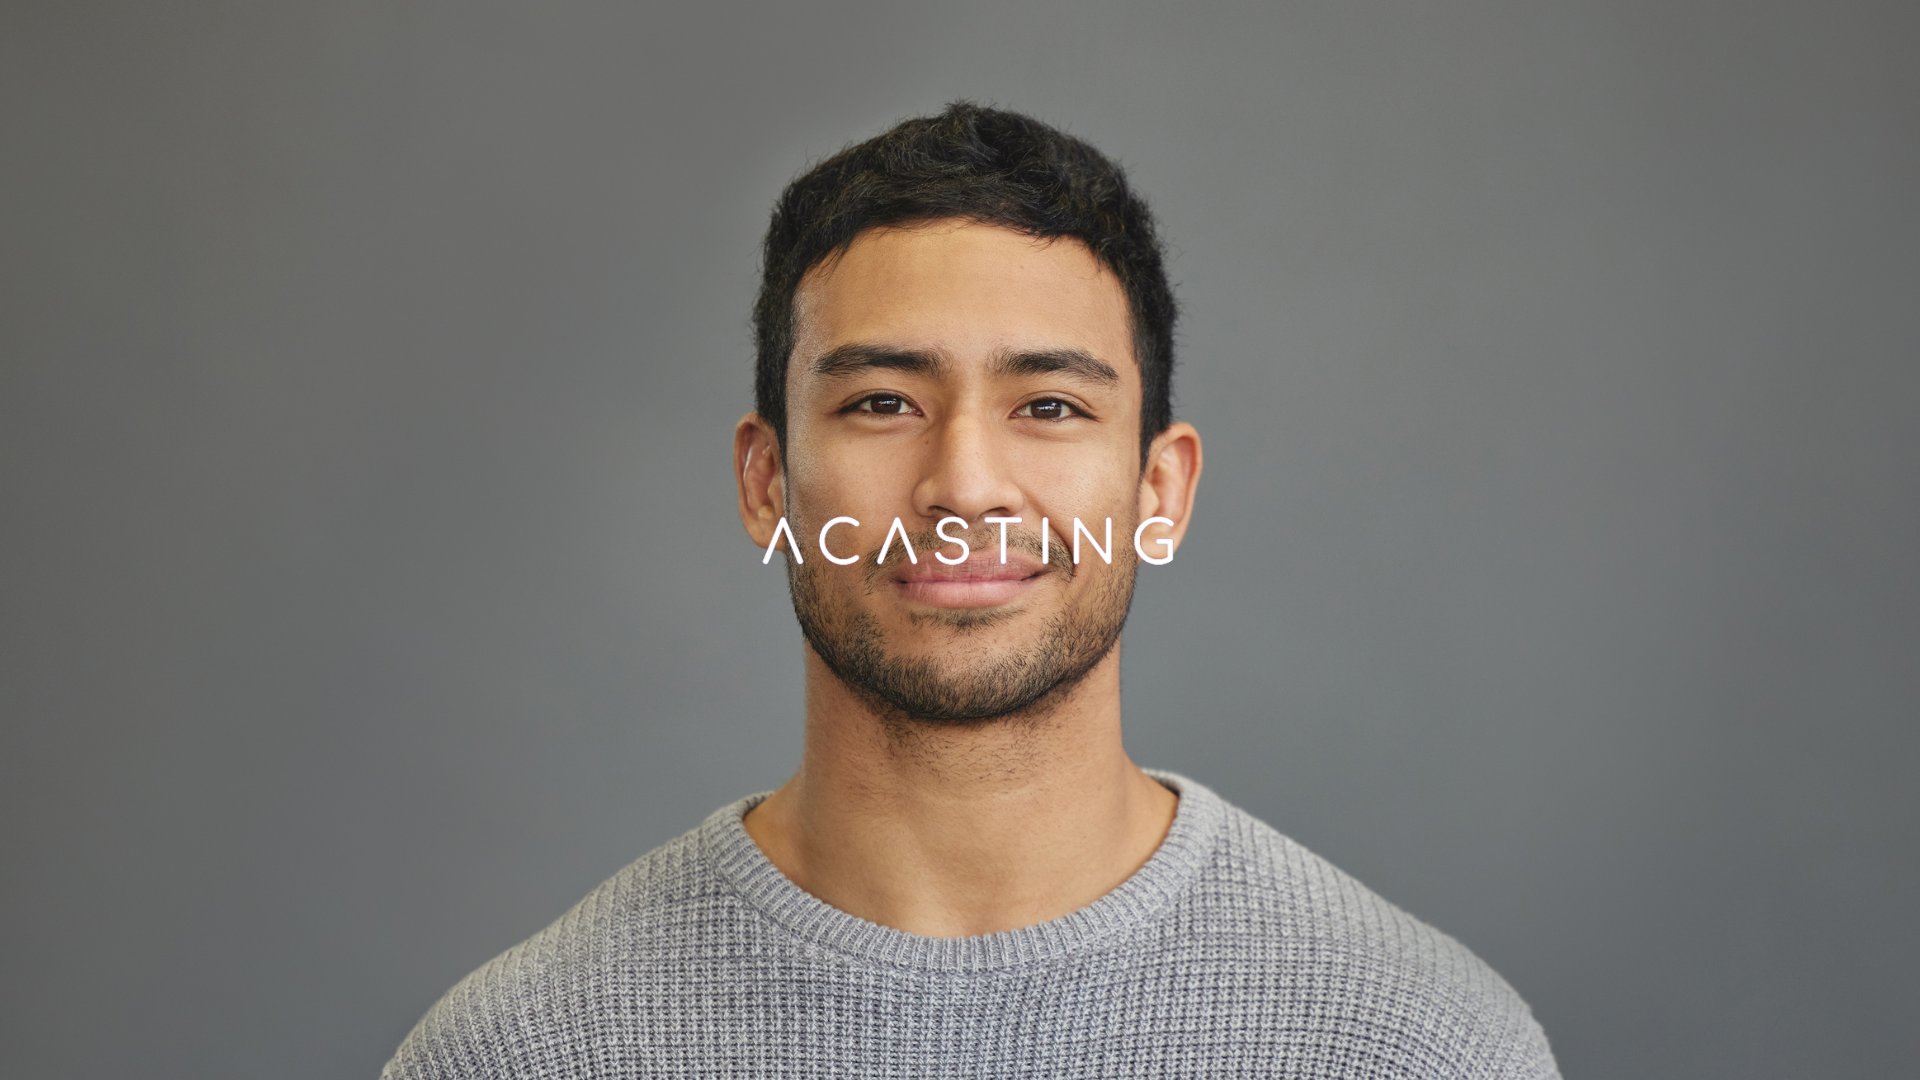 Tips för skådespelare: Fotografering och Bildval för din Acasting profil 📸